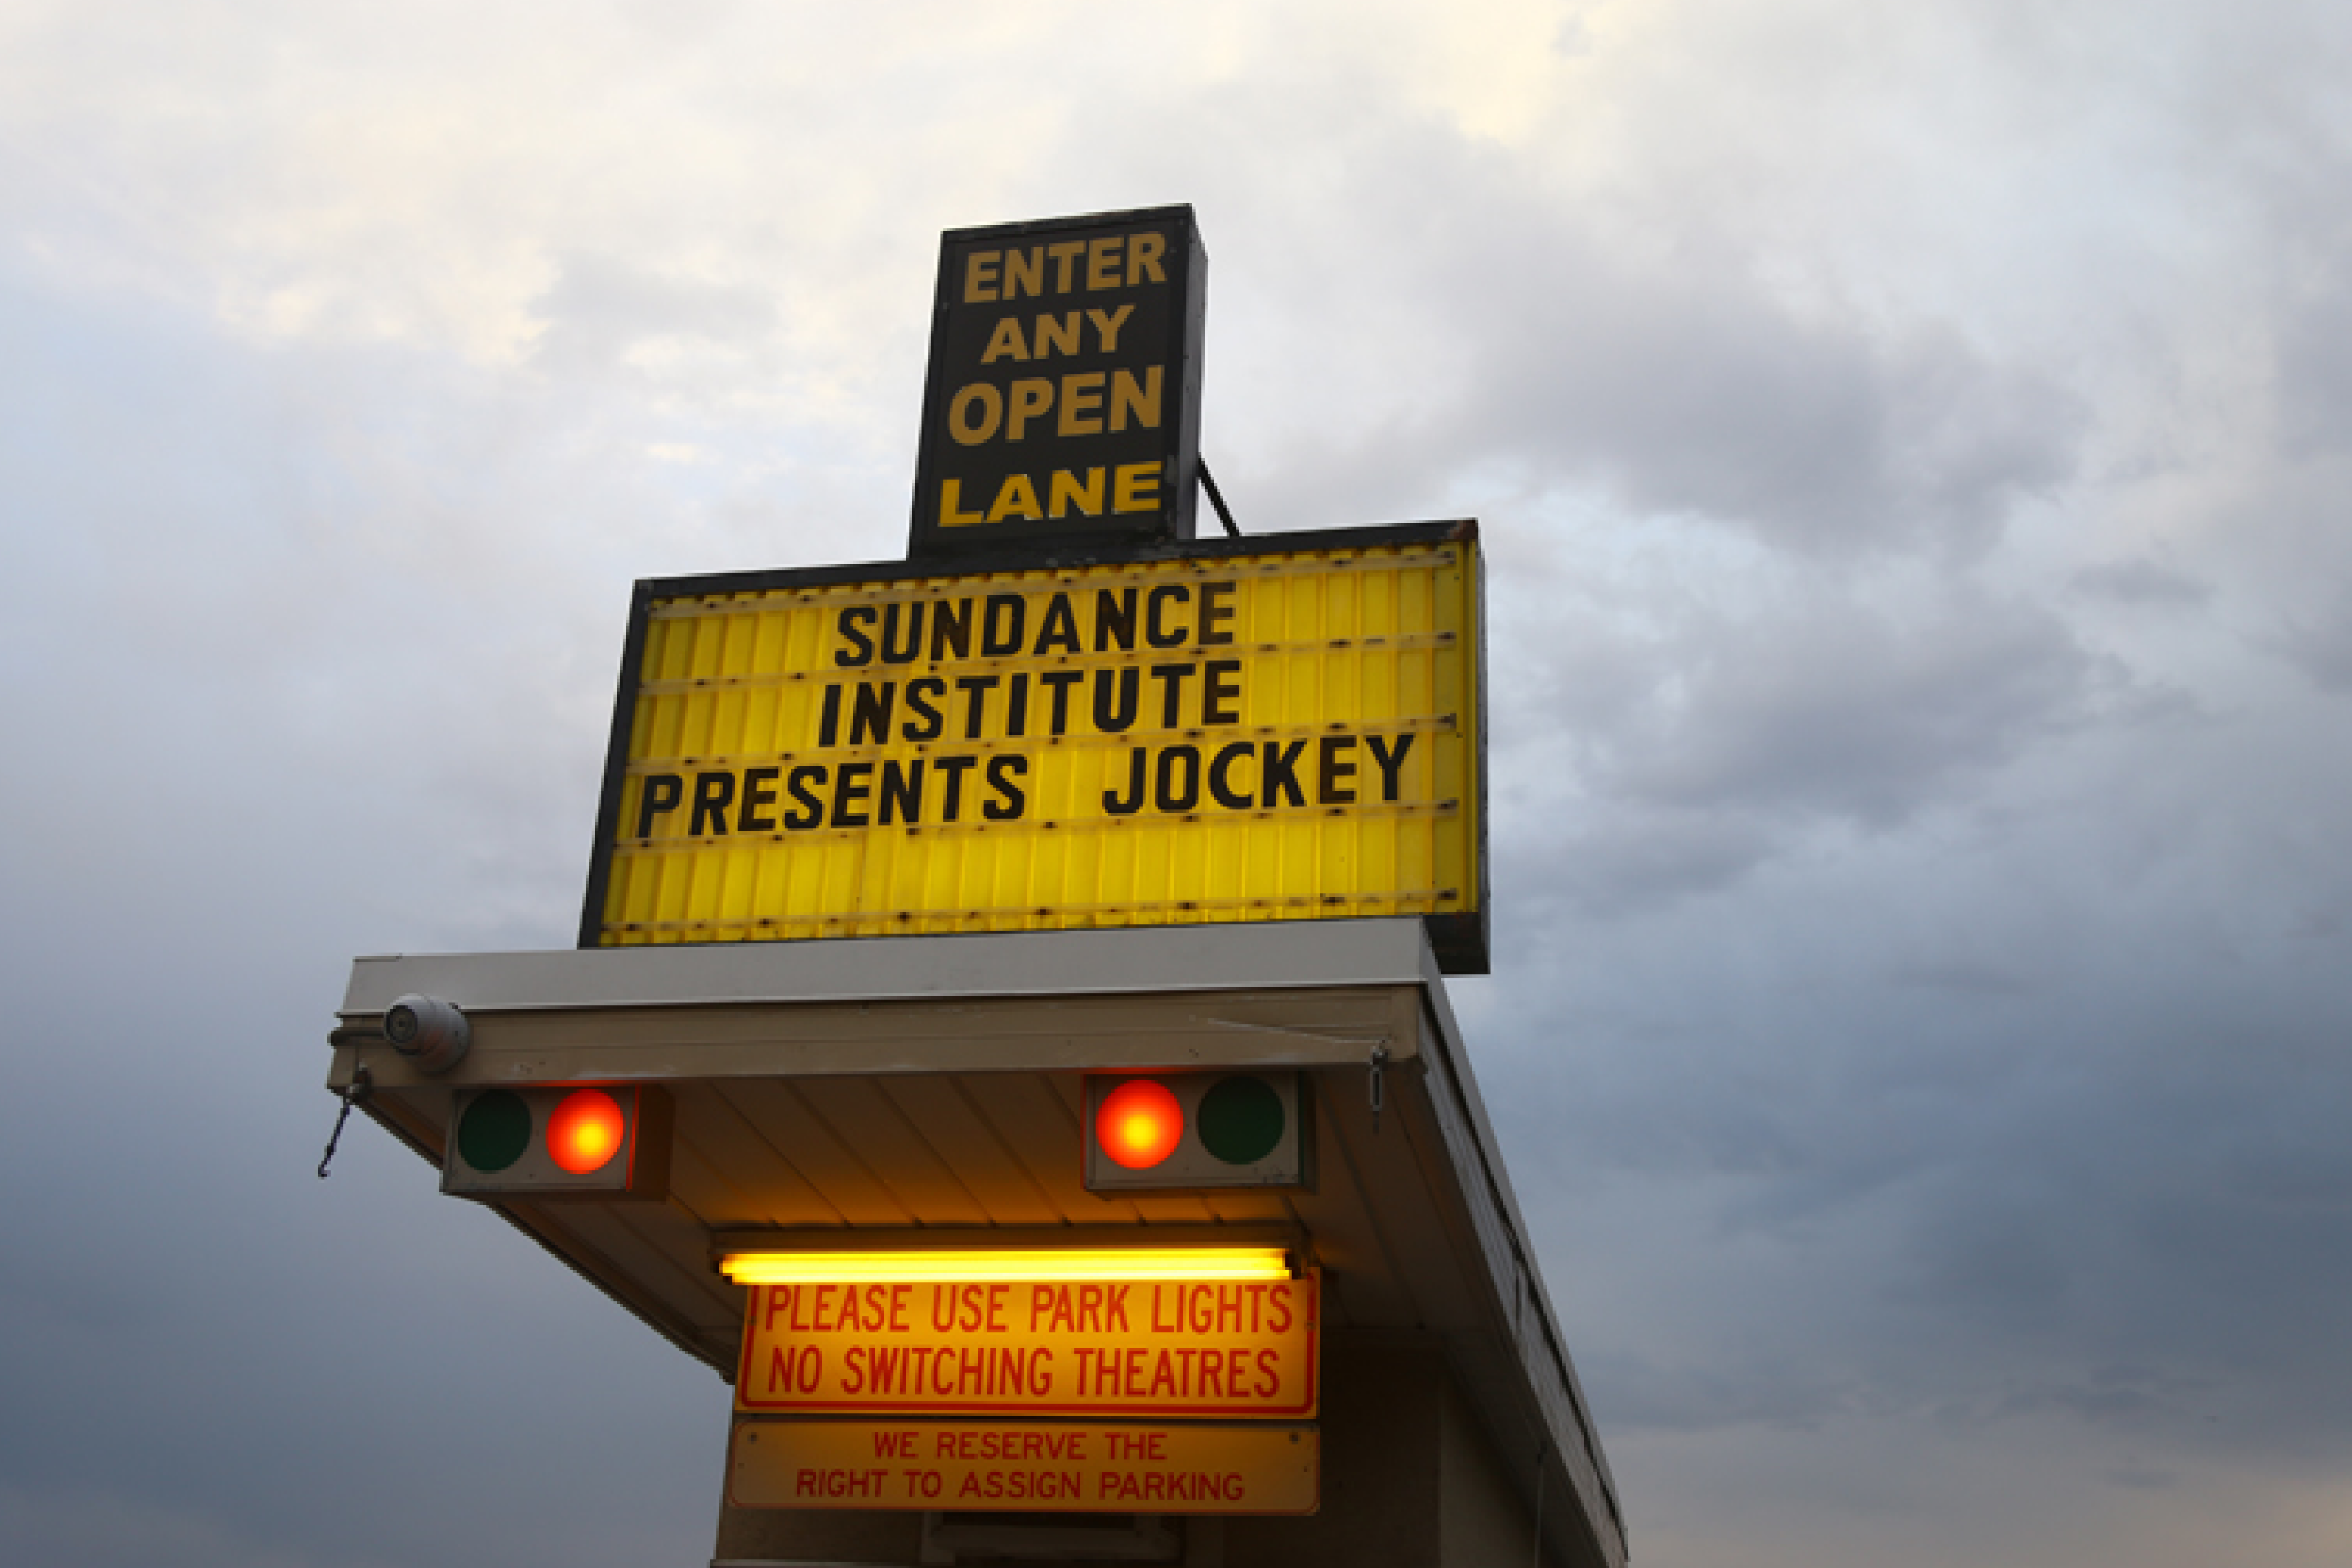 Marquesina al aire libre en la que se muestra que el Festival de Cine de Sundance presenta Jockey